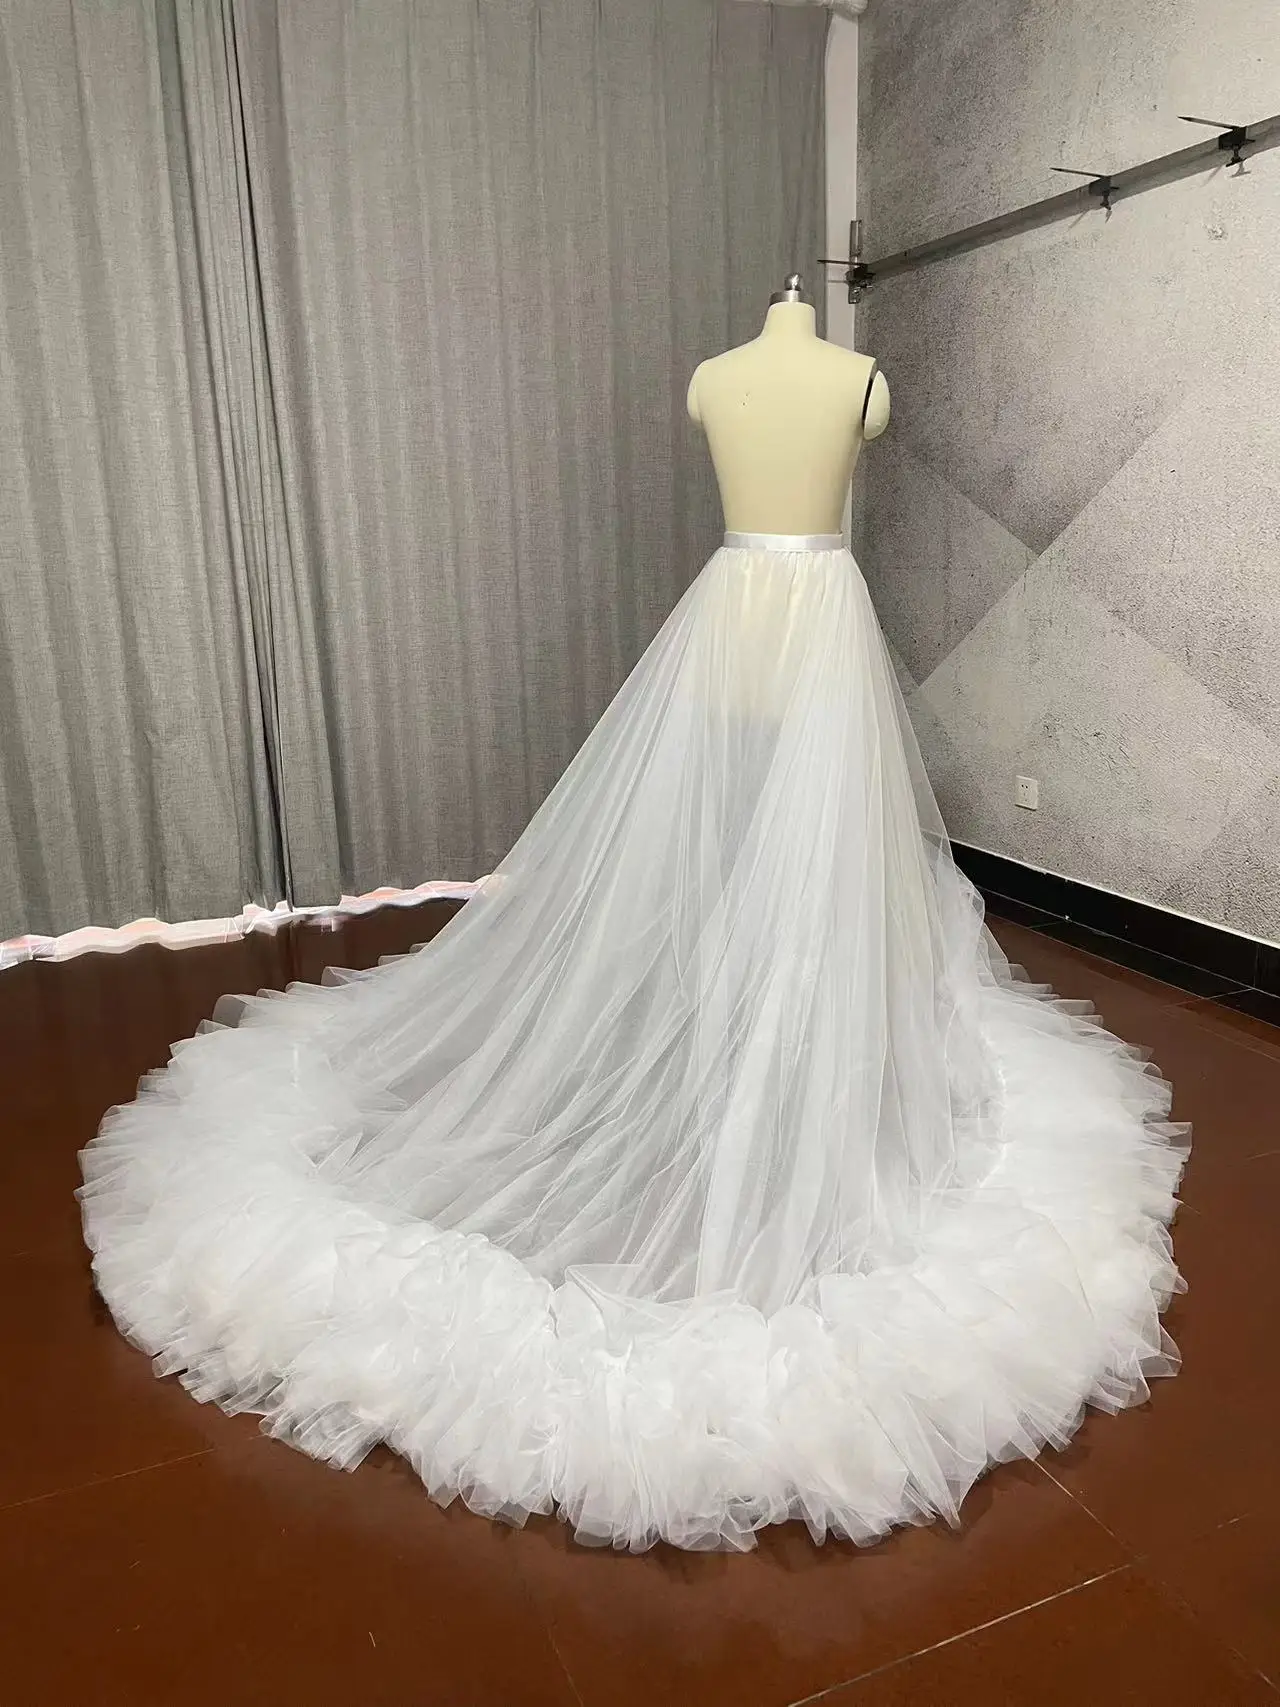 Съемная юбка из тюля с оборками, верхняя юбка, шлейф свадебного платья, свадебный аксессуар нестандартного размера